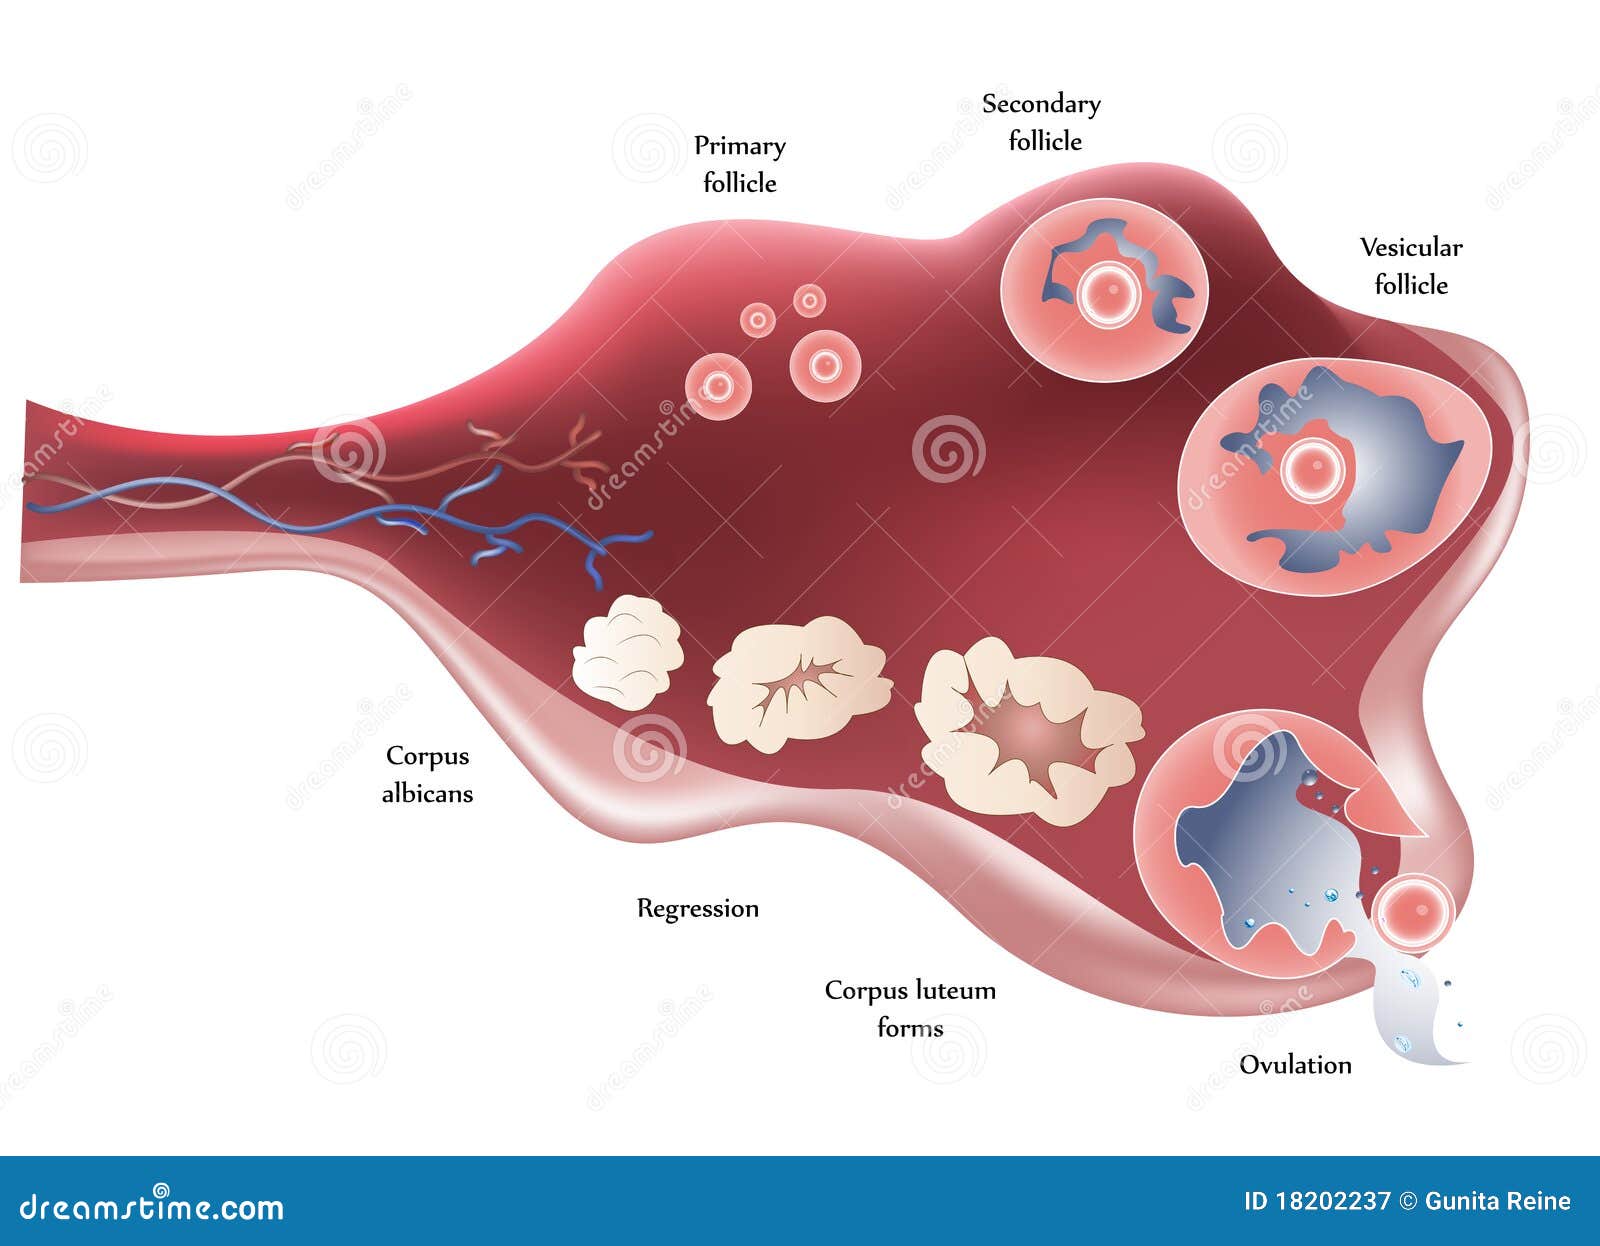 Ilustración que muestra la anatomía del ovario. Ovulación gradualmente. Fondo blanco aislado.